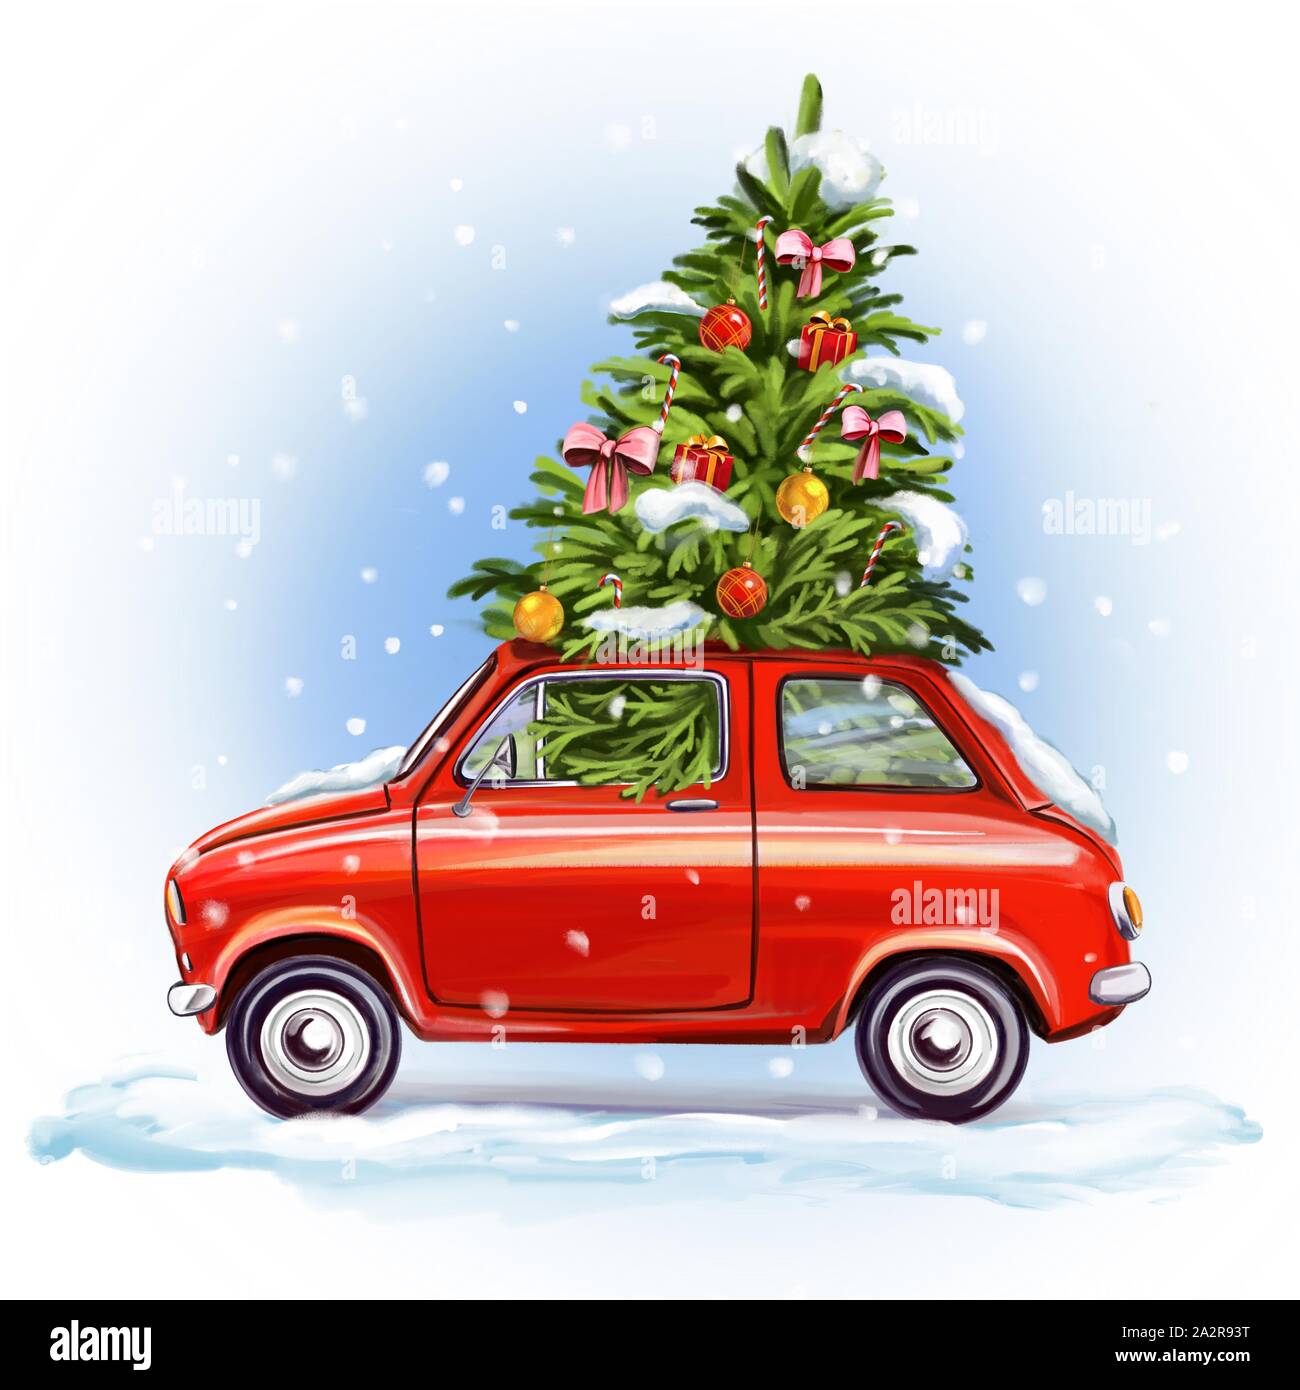 https://c8.alamy.com/compde/2a2r93t/weihnachtsbaum-auf-dem-auto-dekorative-christmas-ornament-art-illustration-mit-aquarell-auf-weissem-hintergrund-gemalt-2a2r93t.jpg